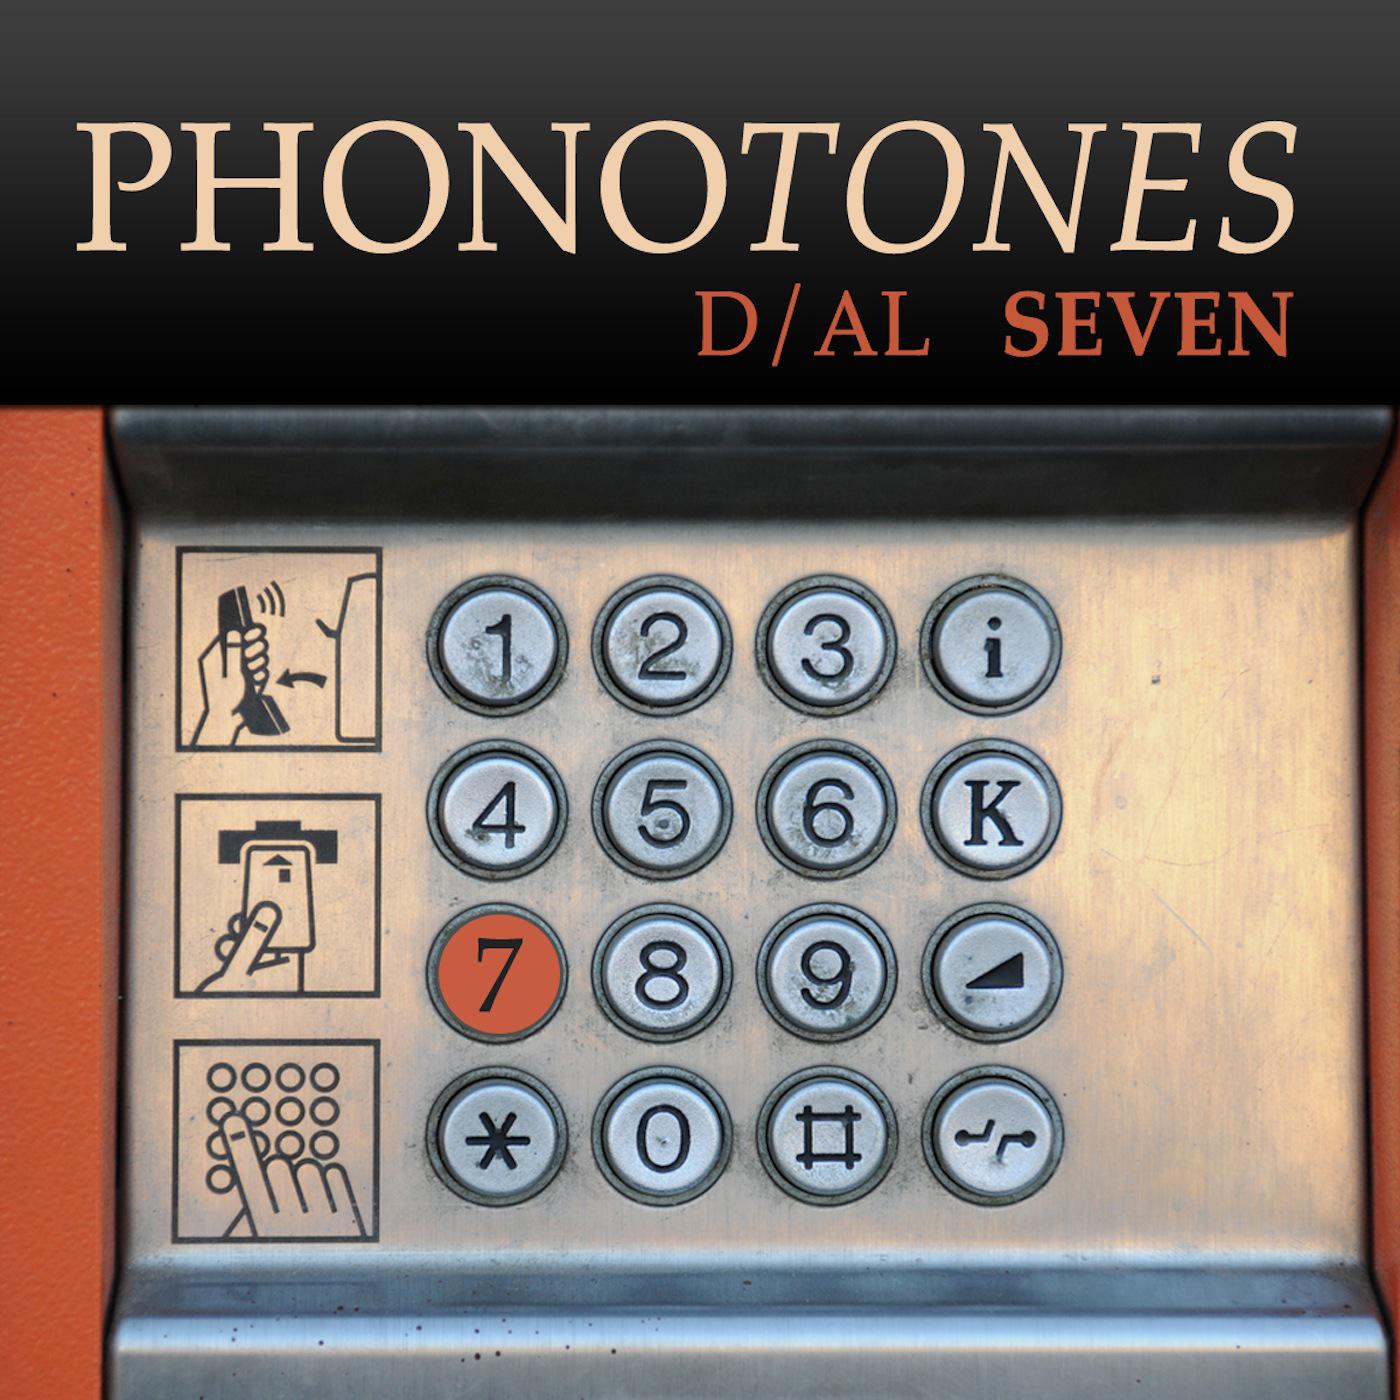 Phonotones - Dial 7